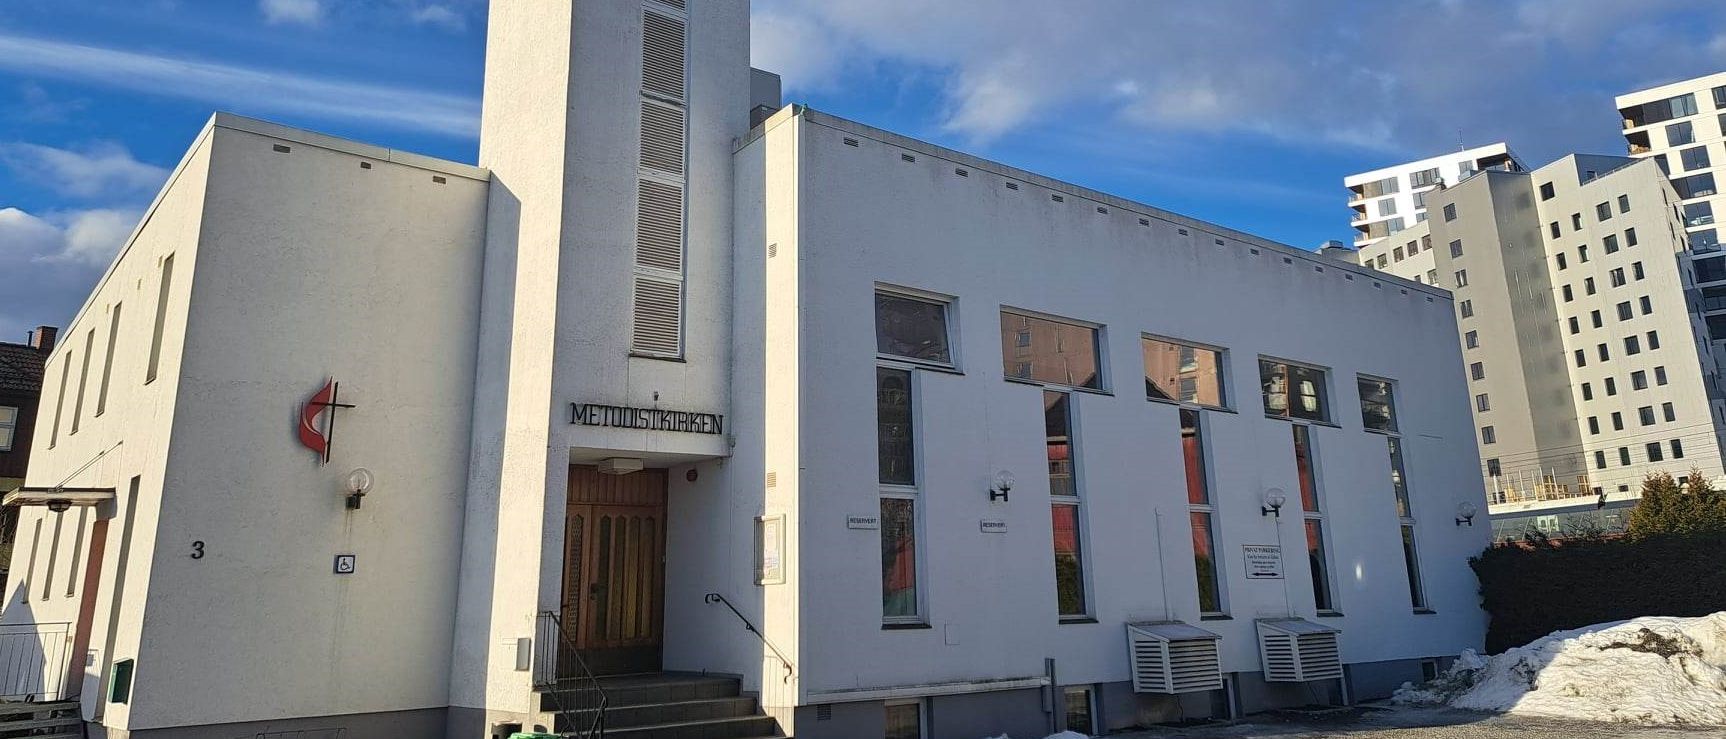 Velkommen til Metodistkirken i Lillestrøm